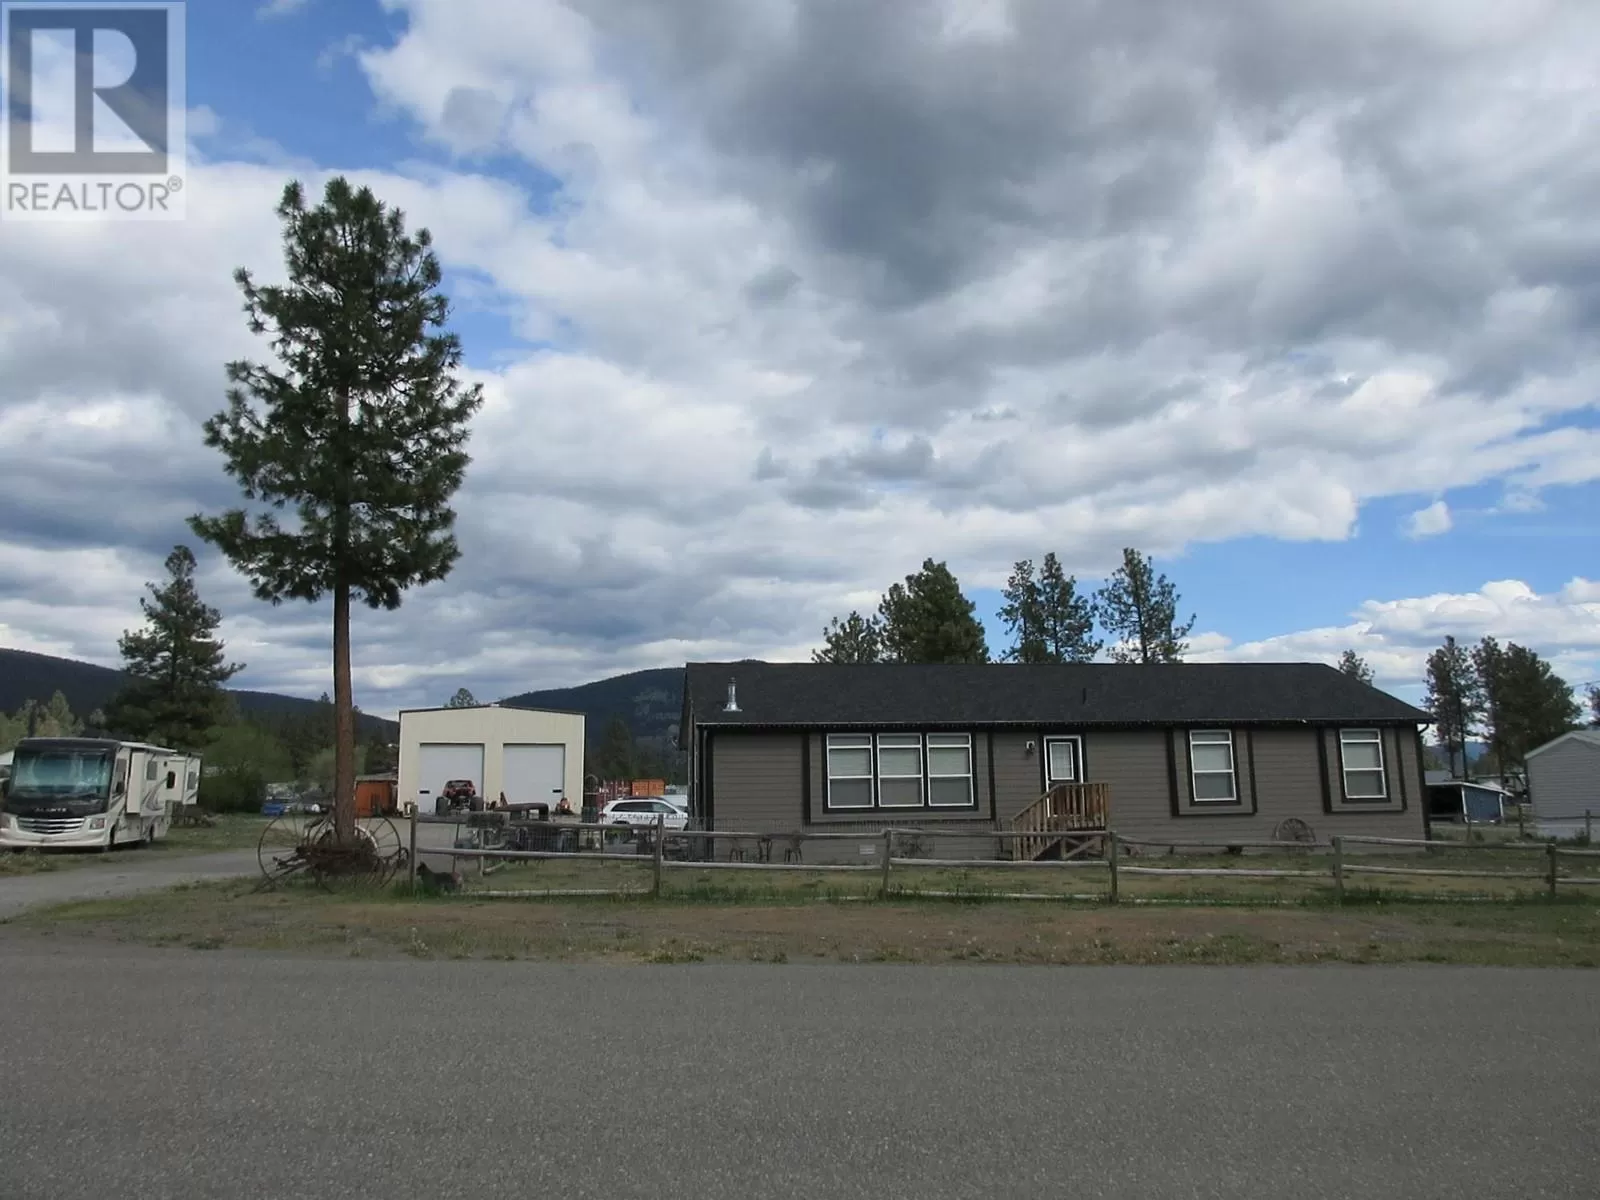 House for rent: 2544 Corkle Street, Merritt, British Columbia V0K 1Y0